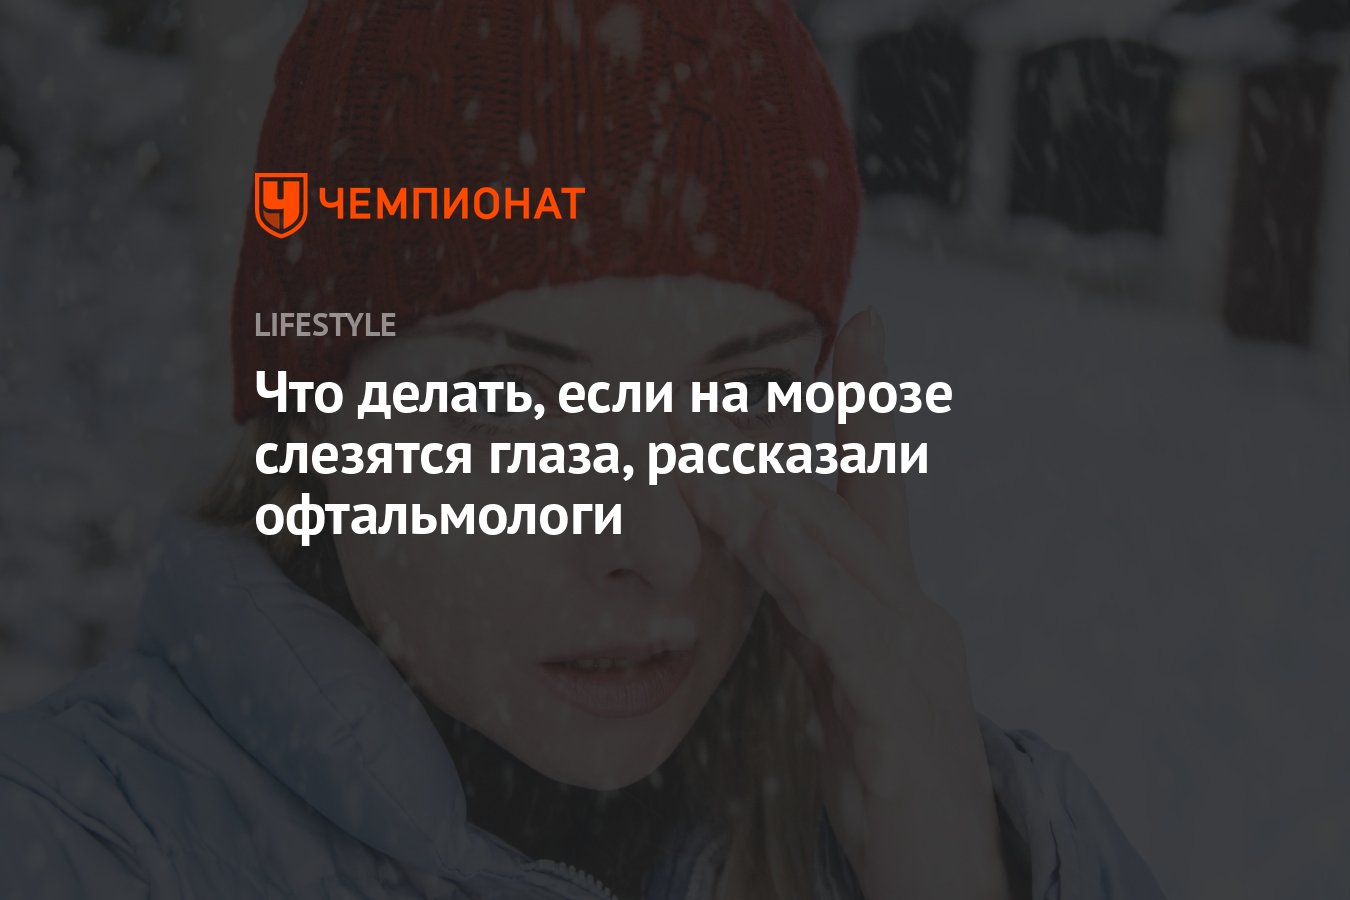 Врач рассказал, почему на морозе слезятся глаза | Телеканал Санкт-Петербург